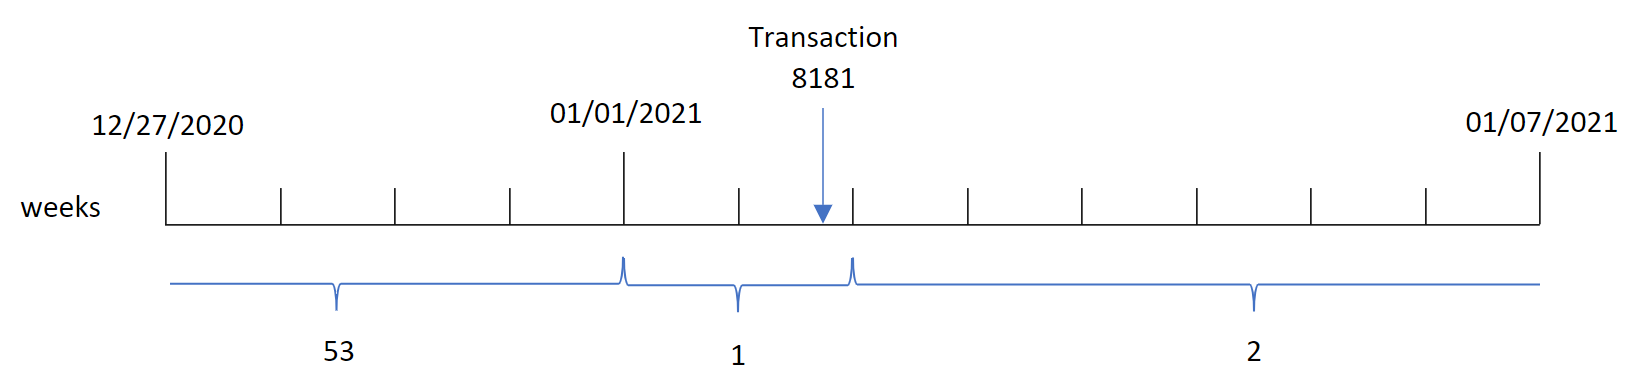 Diagrama que muestra la función weekyear(), esta identifica que la transacción 8181 tuvo lugar en la semana 1 y devuelve el año de esa semana, 2021.